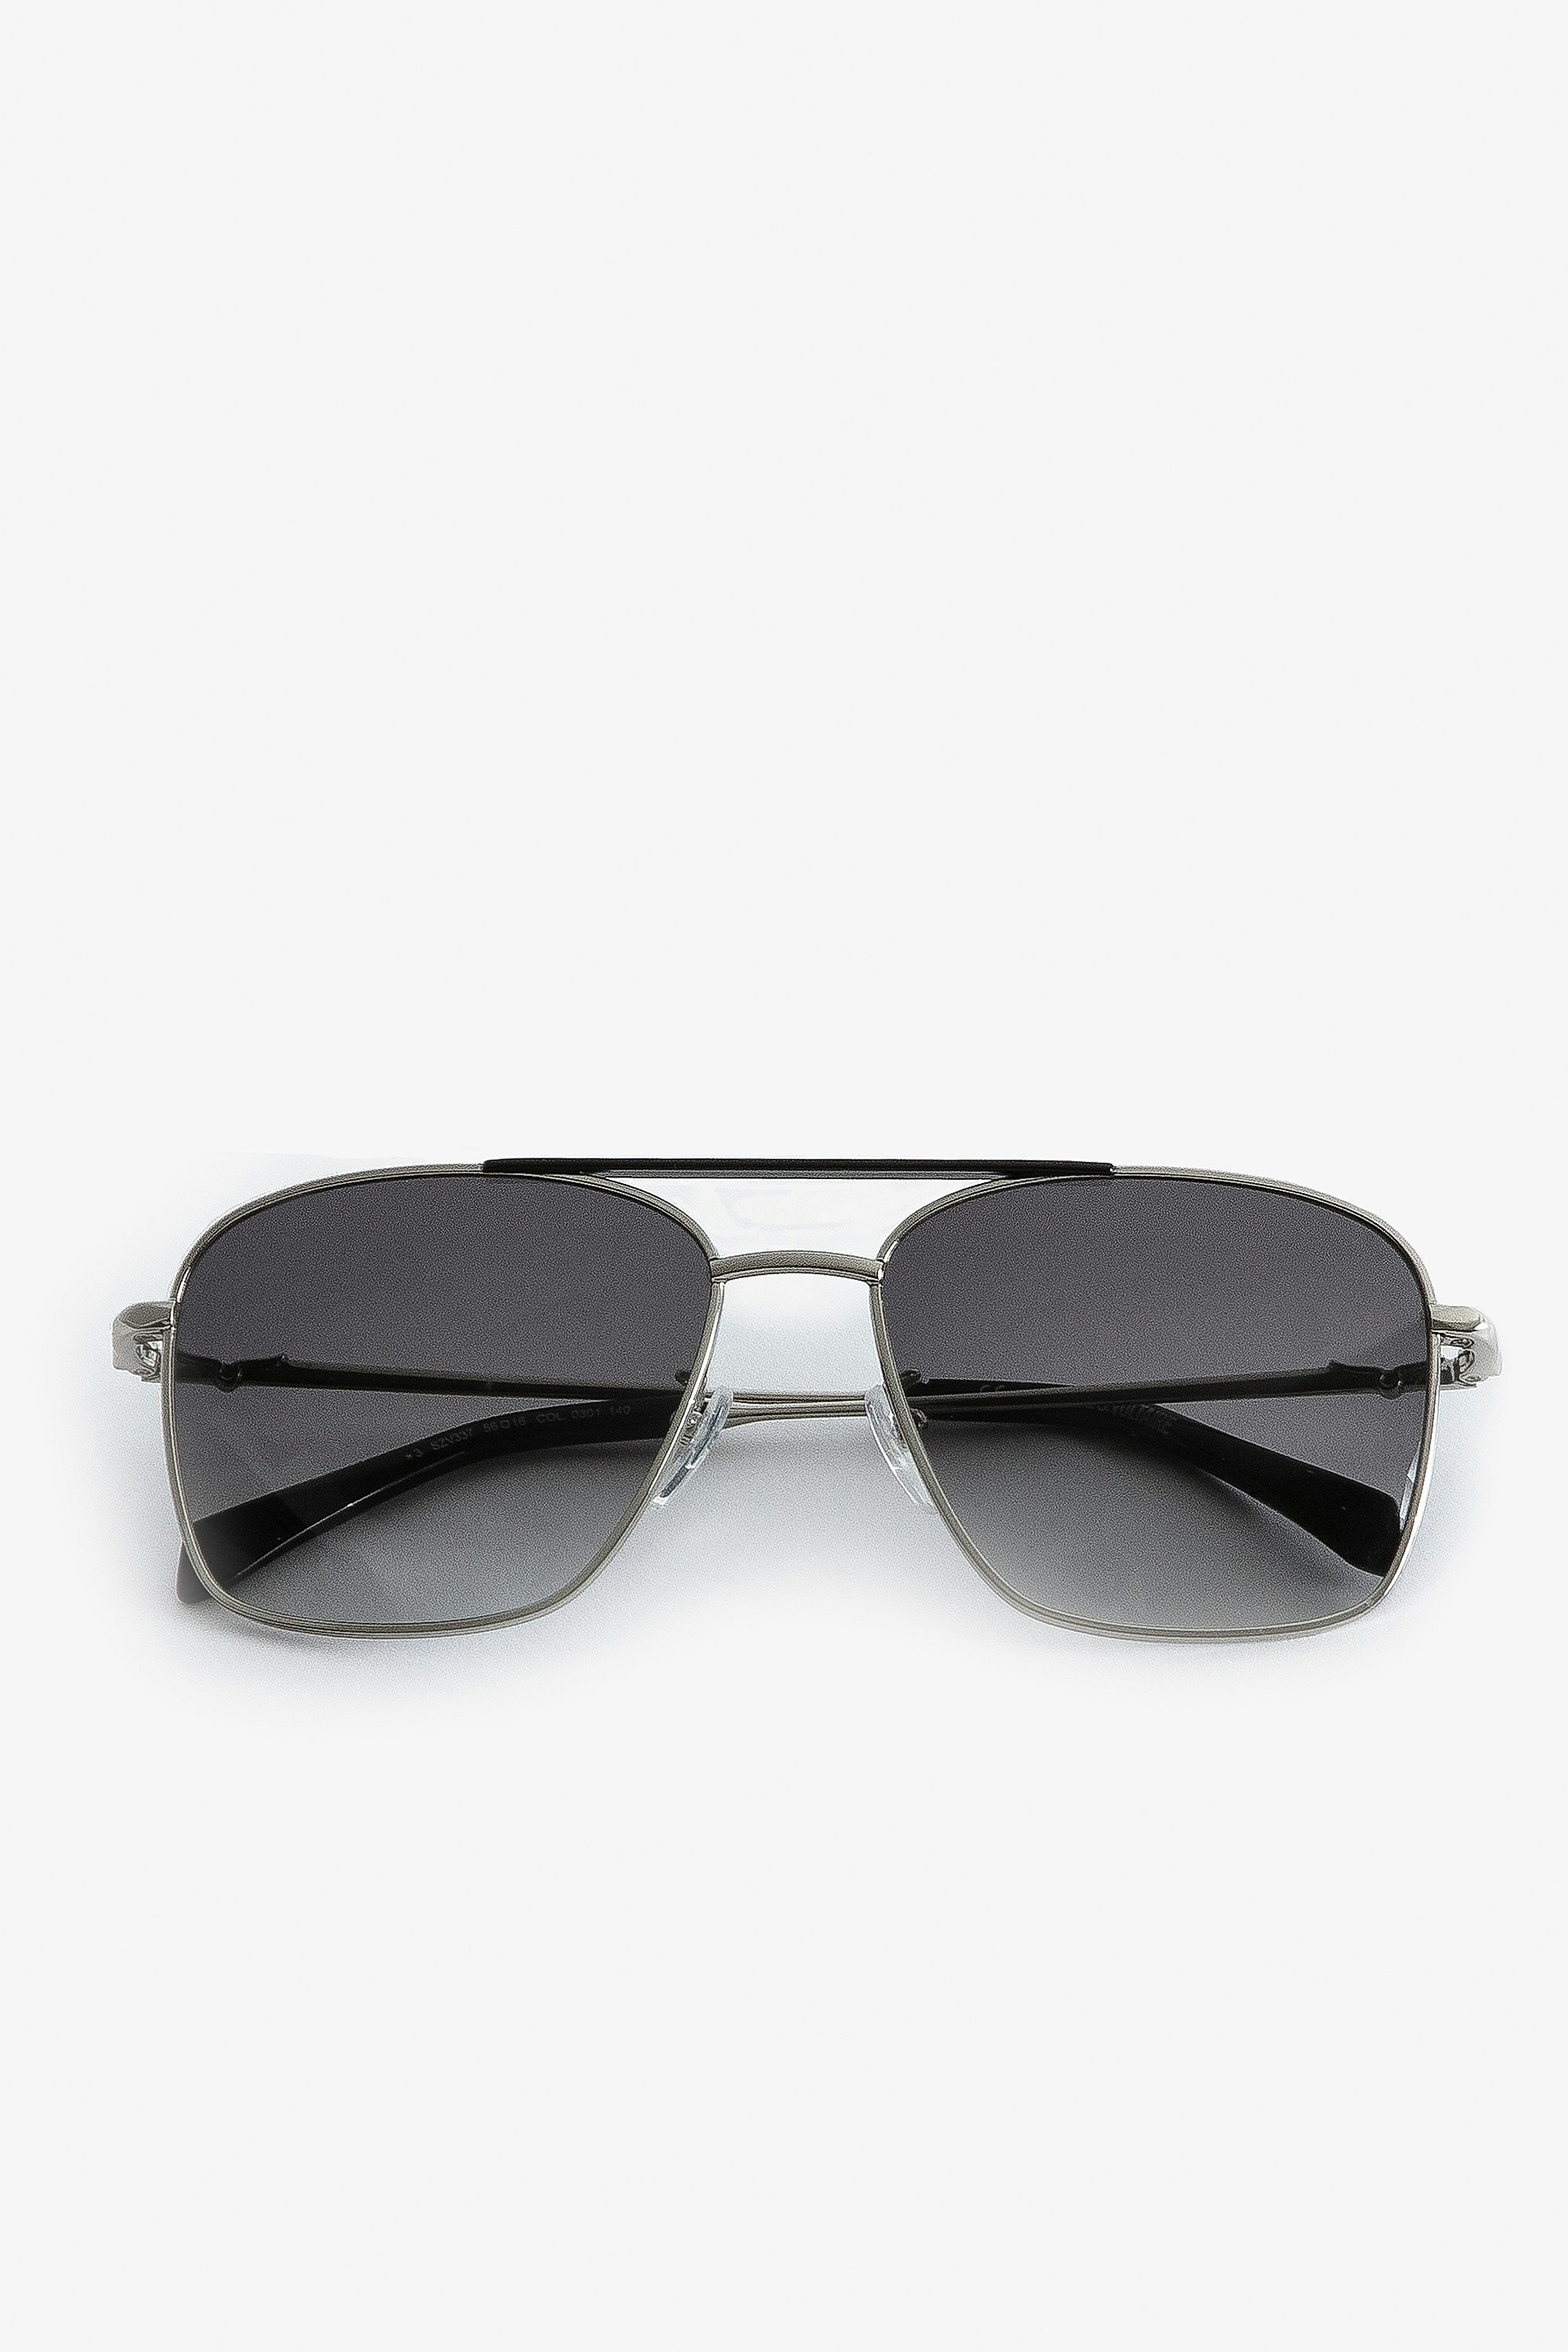 Gafas de sol Wings Aviator Gafas de sol de aviador unisex de metal negro con cristales ahumados